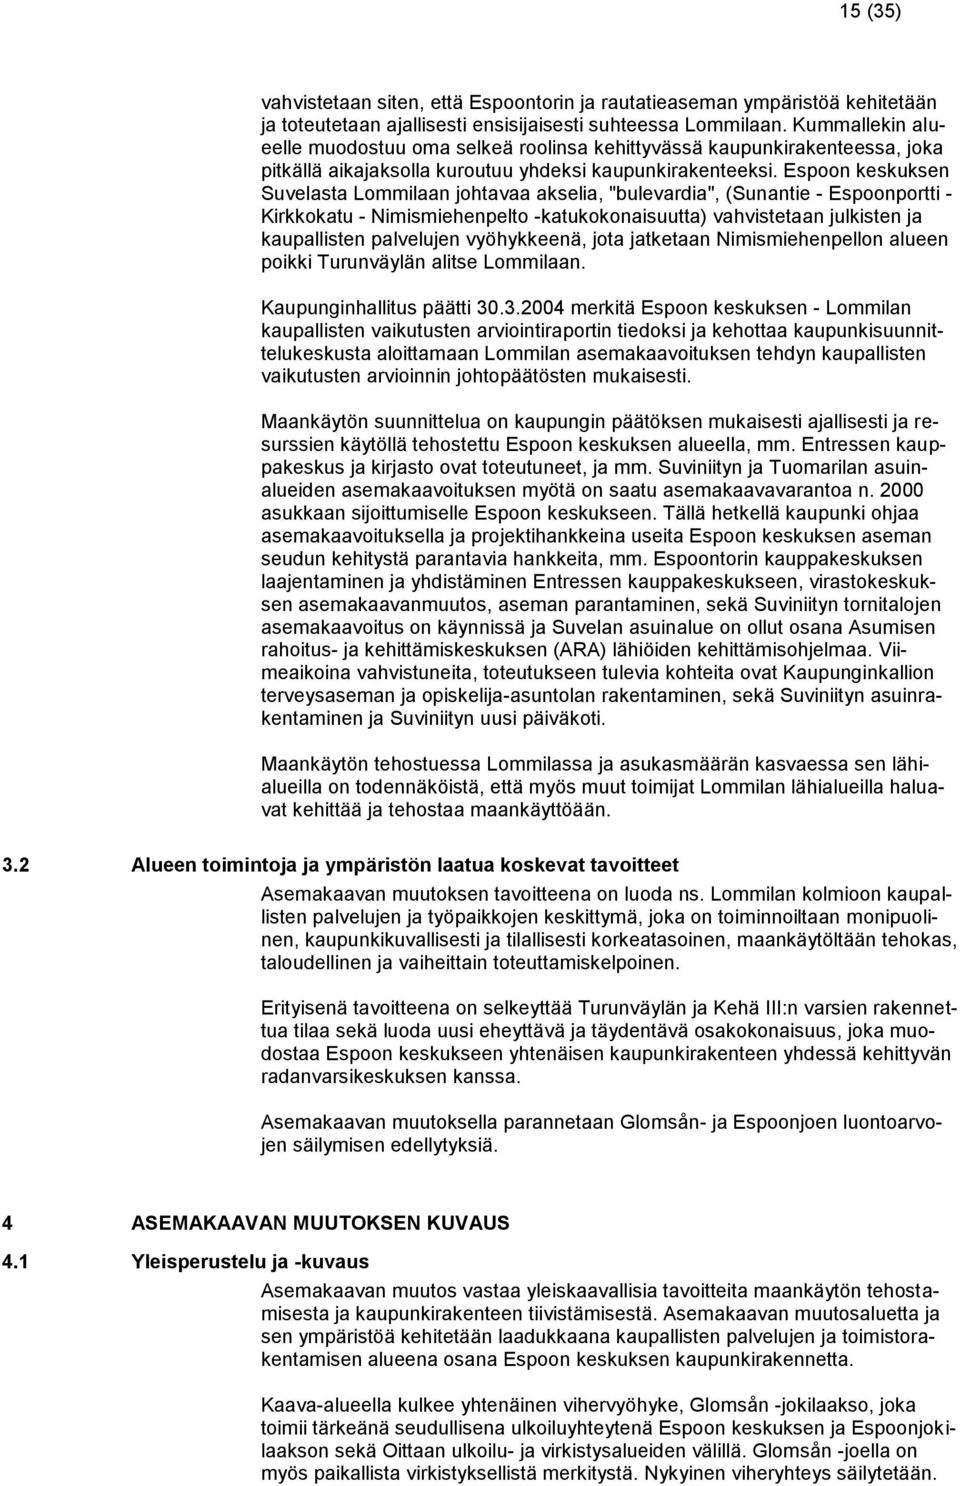 Espoon keskuksen Suvelasta Lommilaan johtavaa akselia, "bulevardia", (Sunantie - Espoonportti - Kirkkokatu - Nimismiehenpelto -katukokonaisuutta) vahvistetaan julkisten ja kaupallisten palvelujen